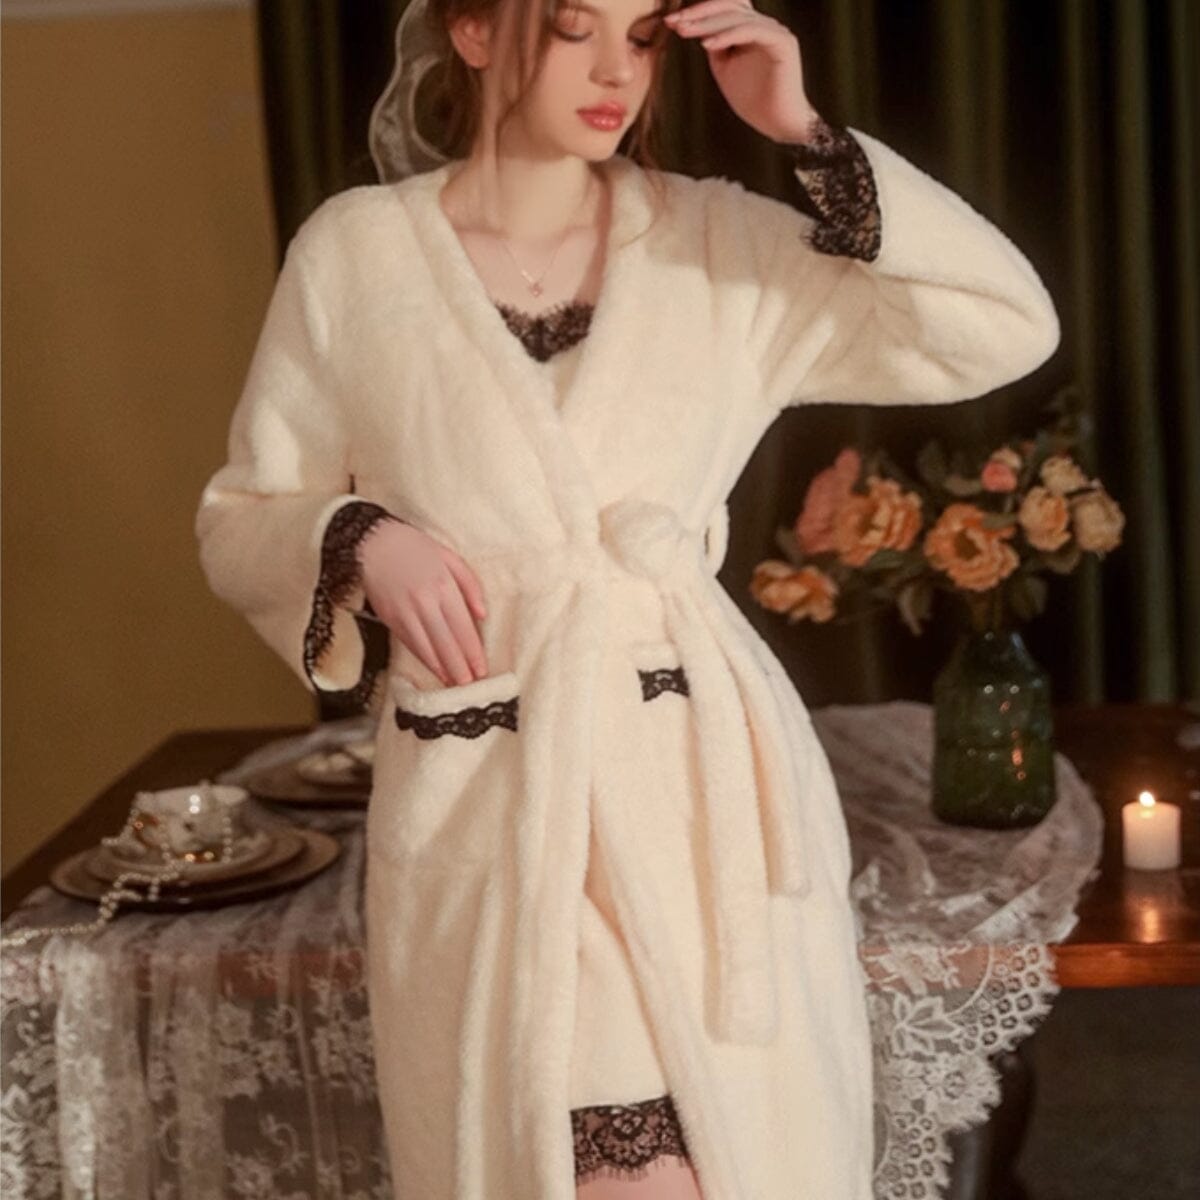 Maura fleece robe Intimates LOVEFREYA 